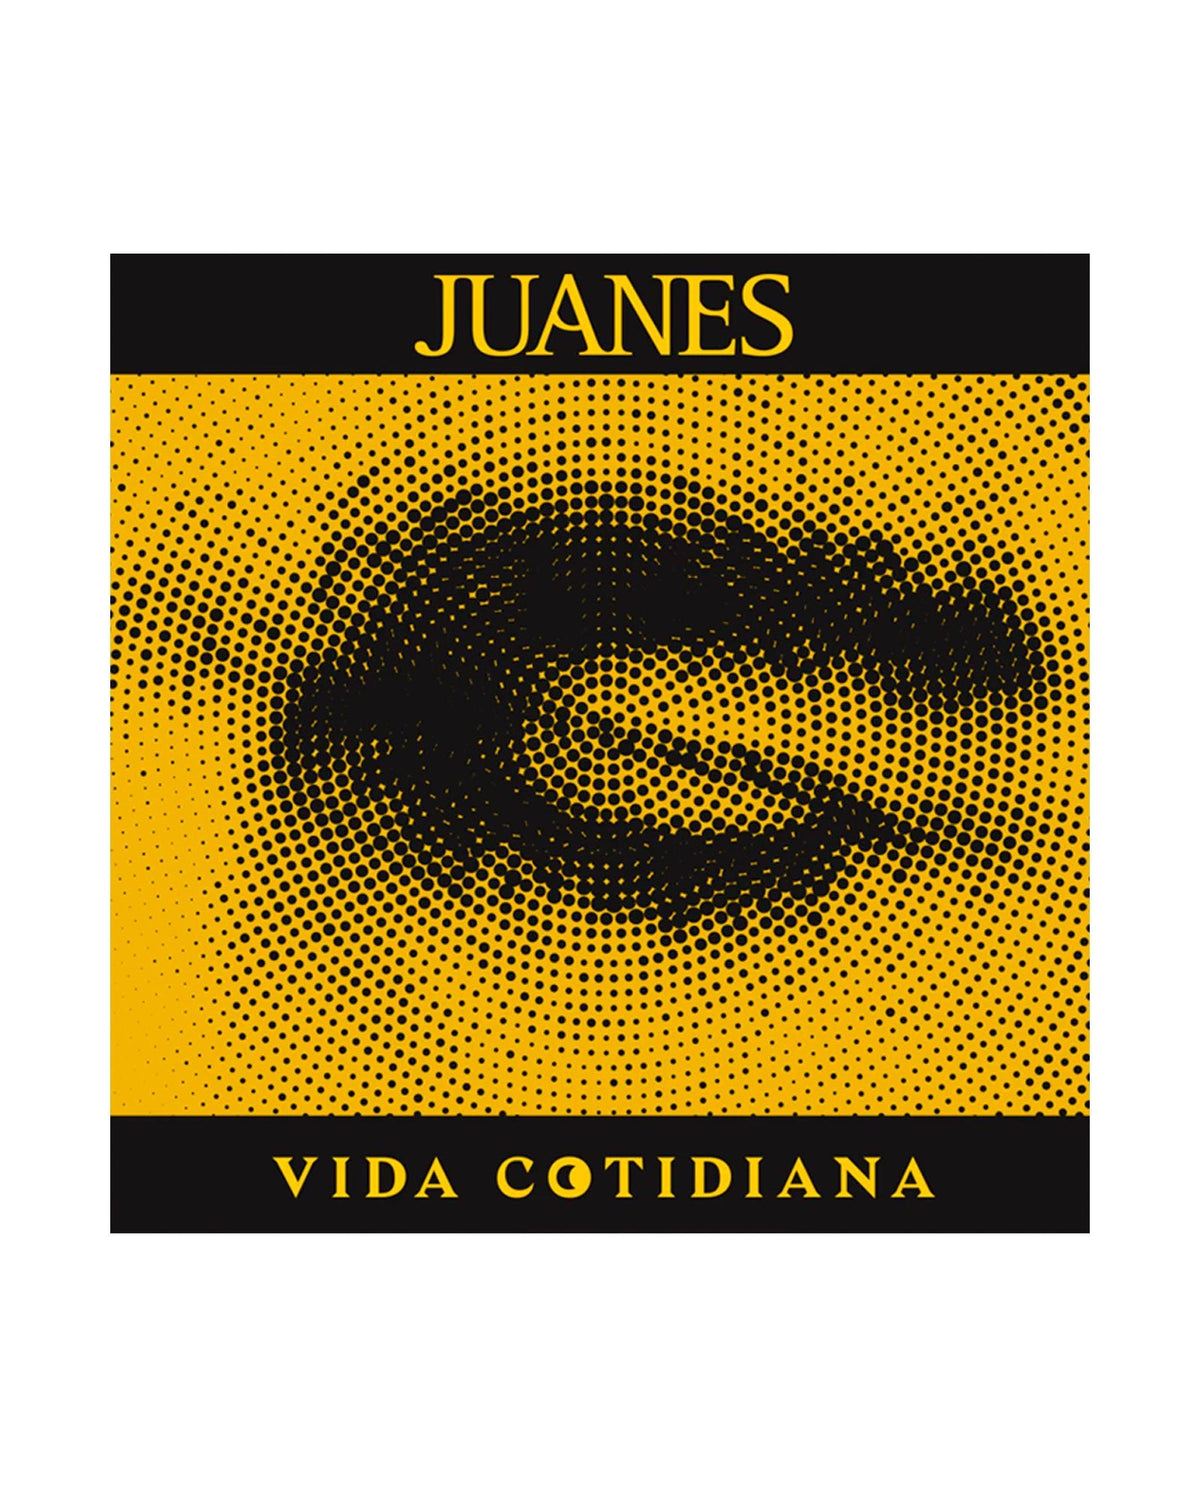 Juanes - CD "Vida Cotidiana" - D2fy · Rocktud - D2fy